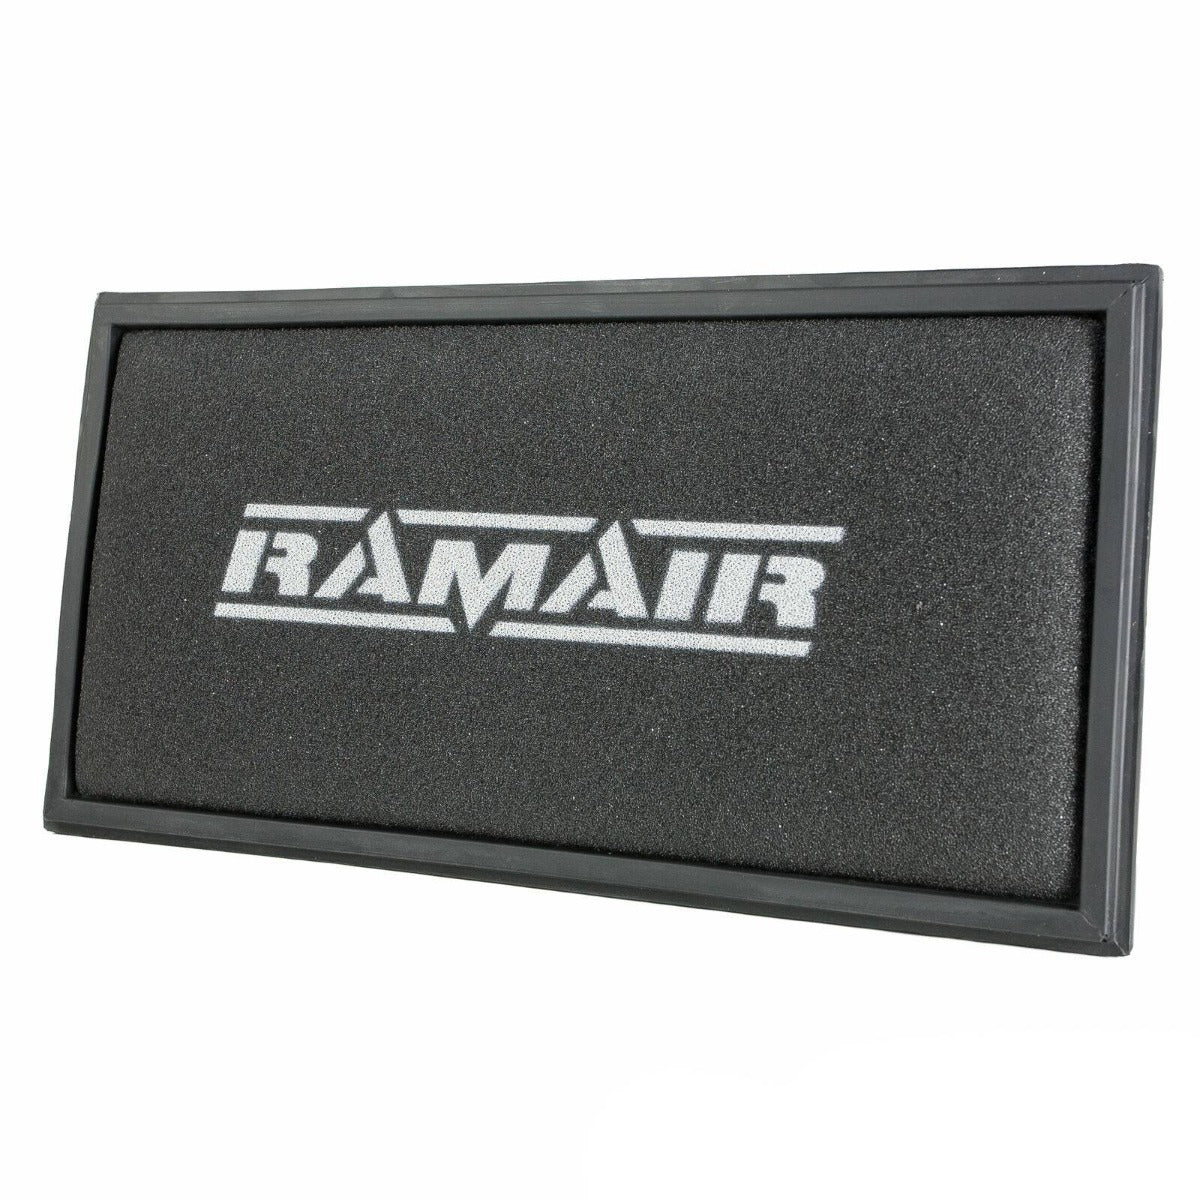 RAMAIR Air Panel Filter for Audi TT Mk1 8N 1.8 Turbo | 3.2 V6